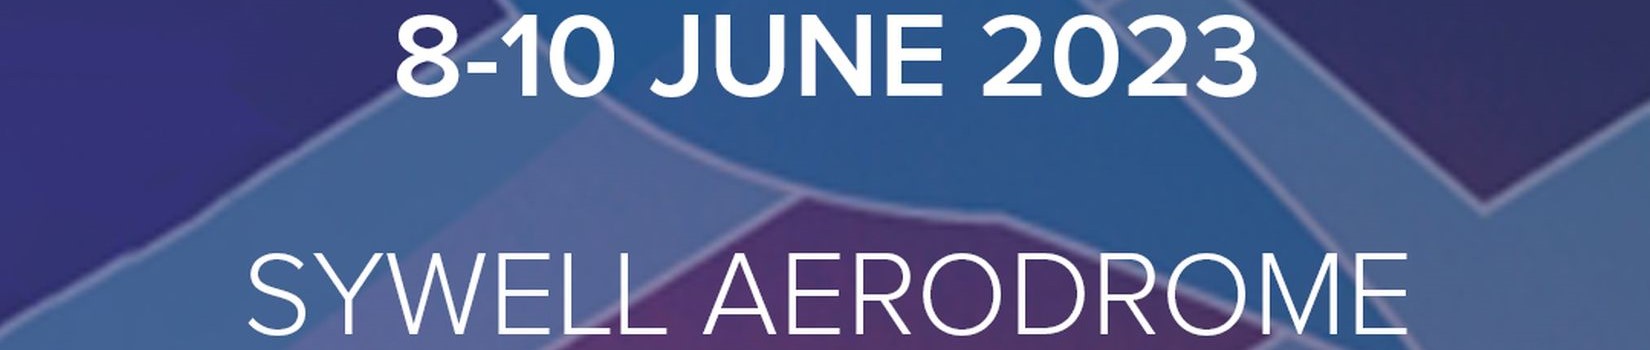 AeroExpo UK